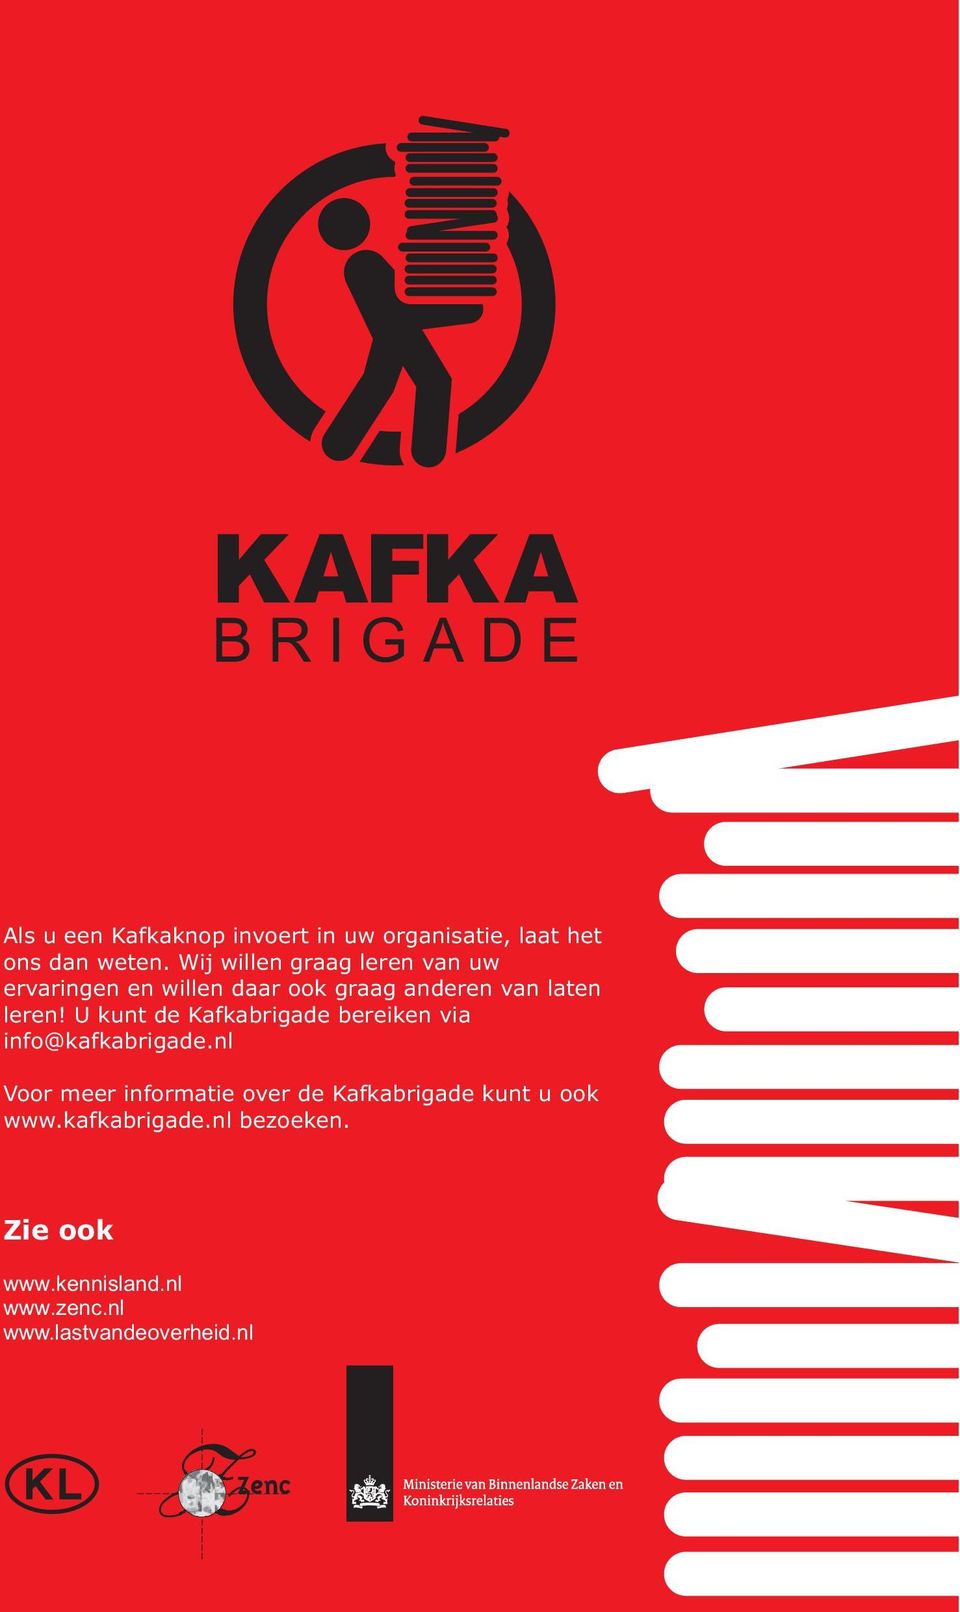 U kunt de Kafkabrigade bereiken via info@kafkabrigade.